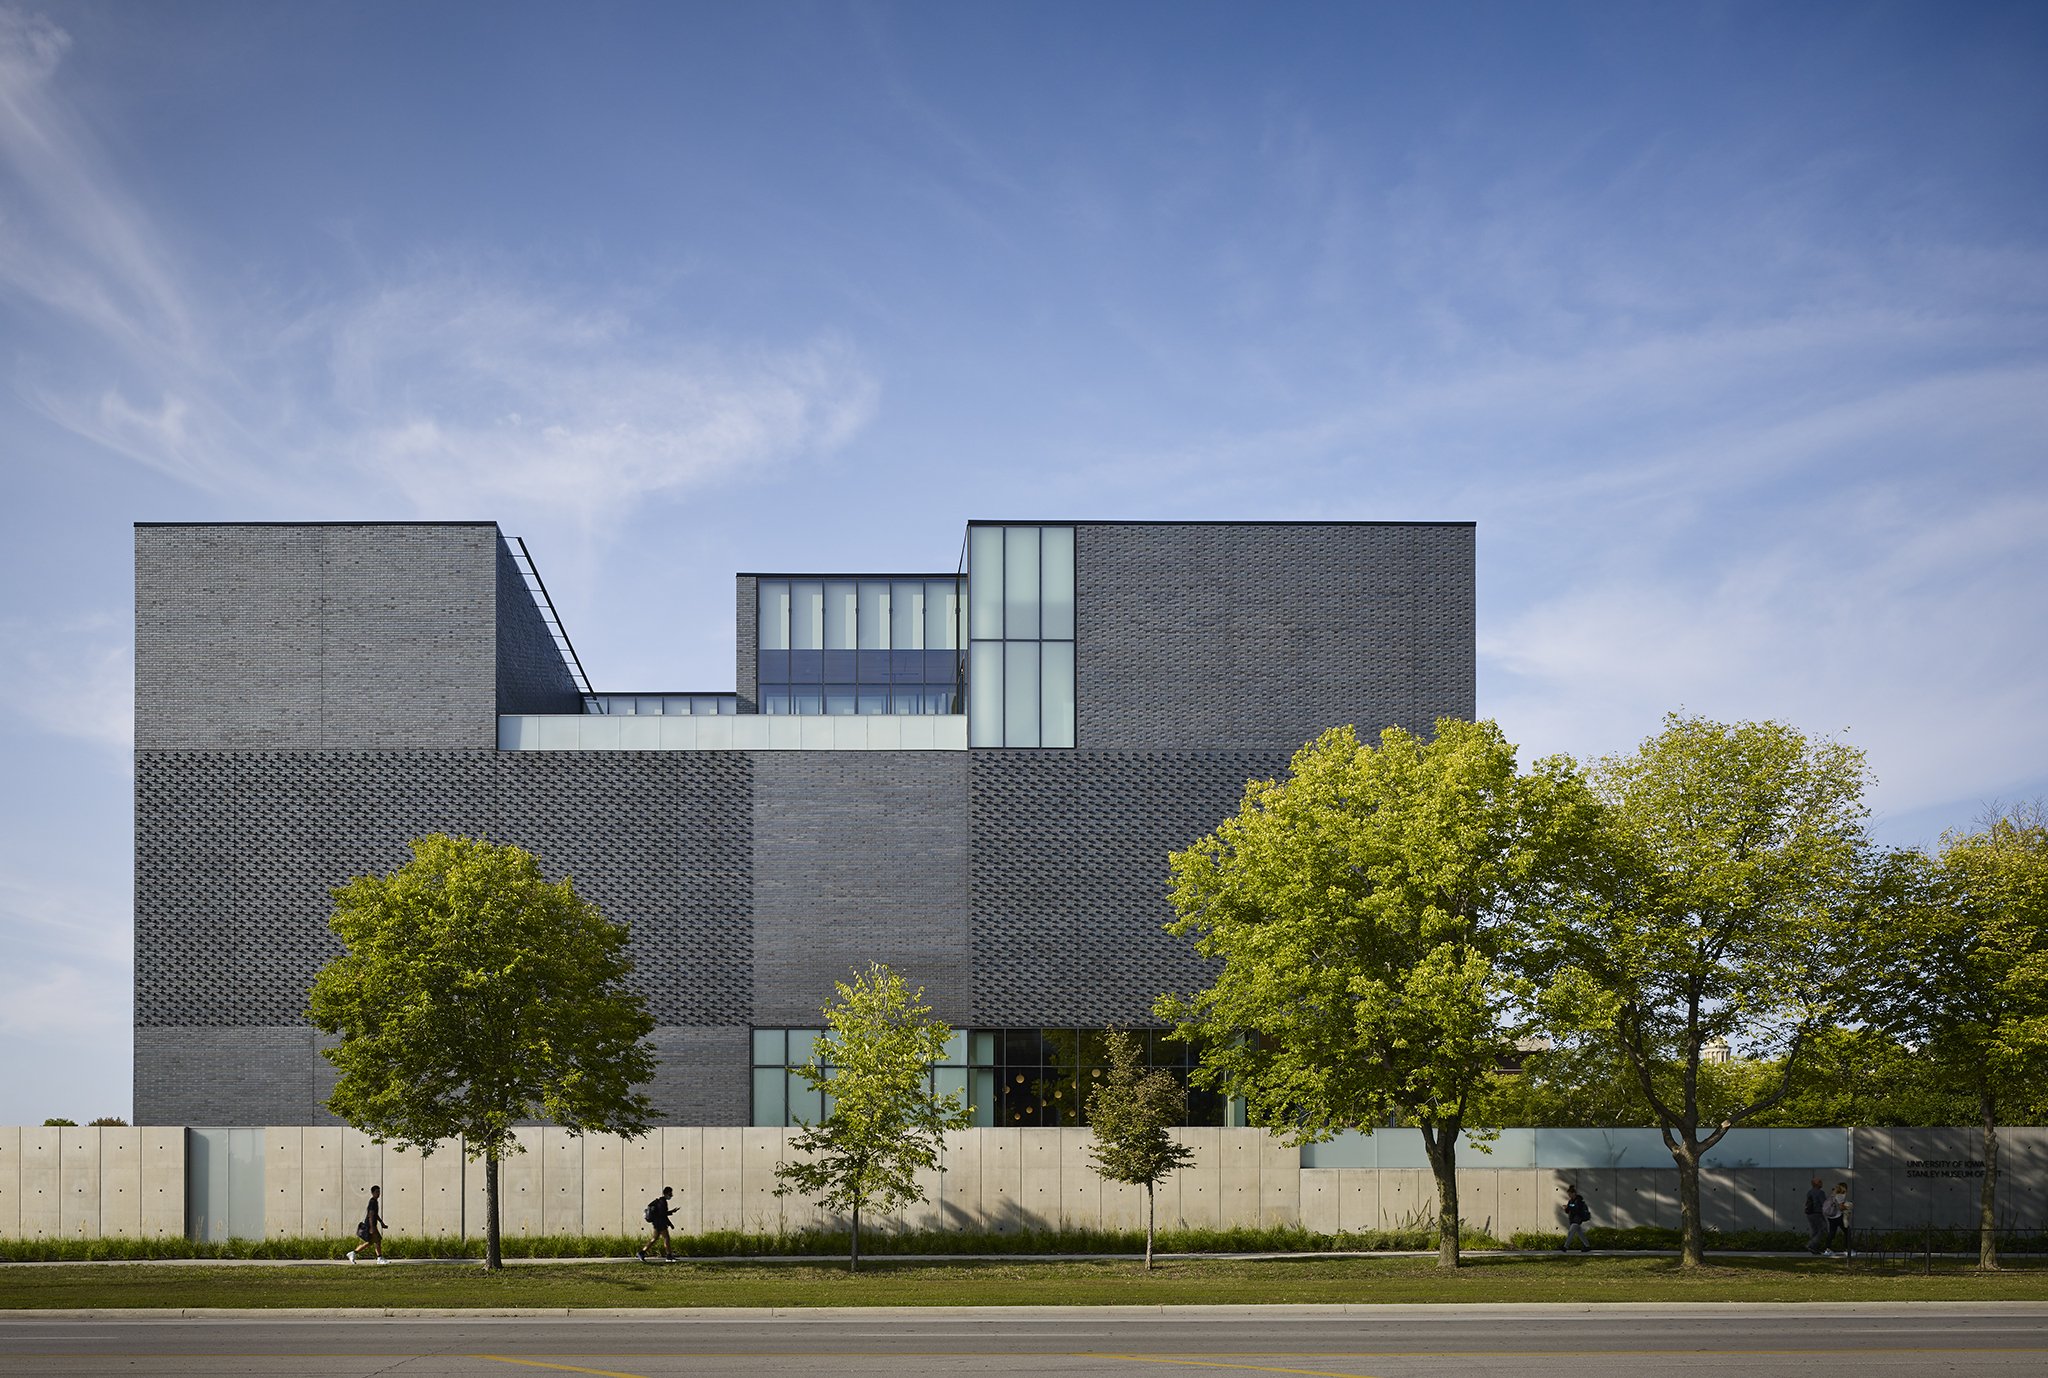  Stanley Museum of Art | University of Iowa  BNIM  Iowa City, IA     Nick Merrick  